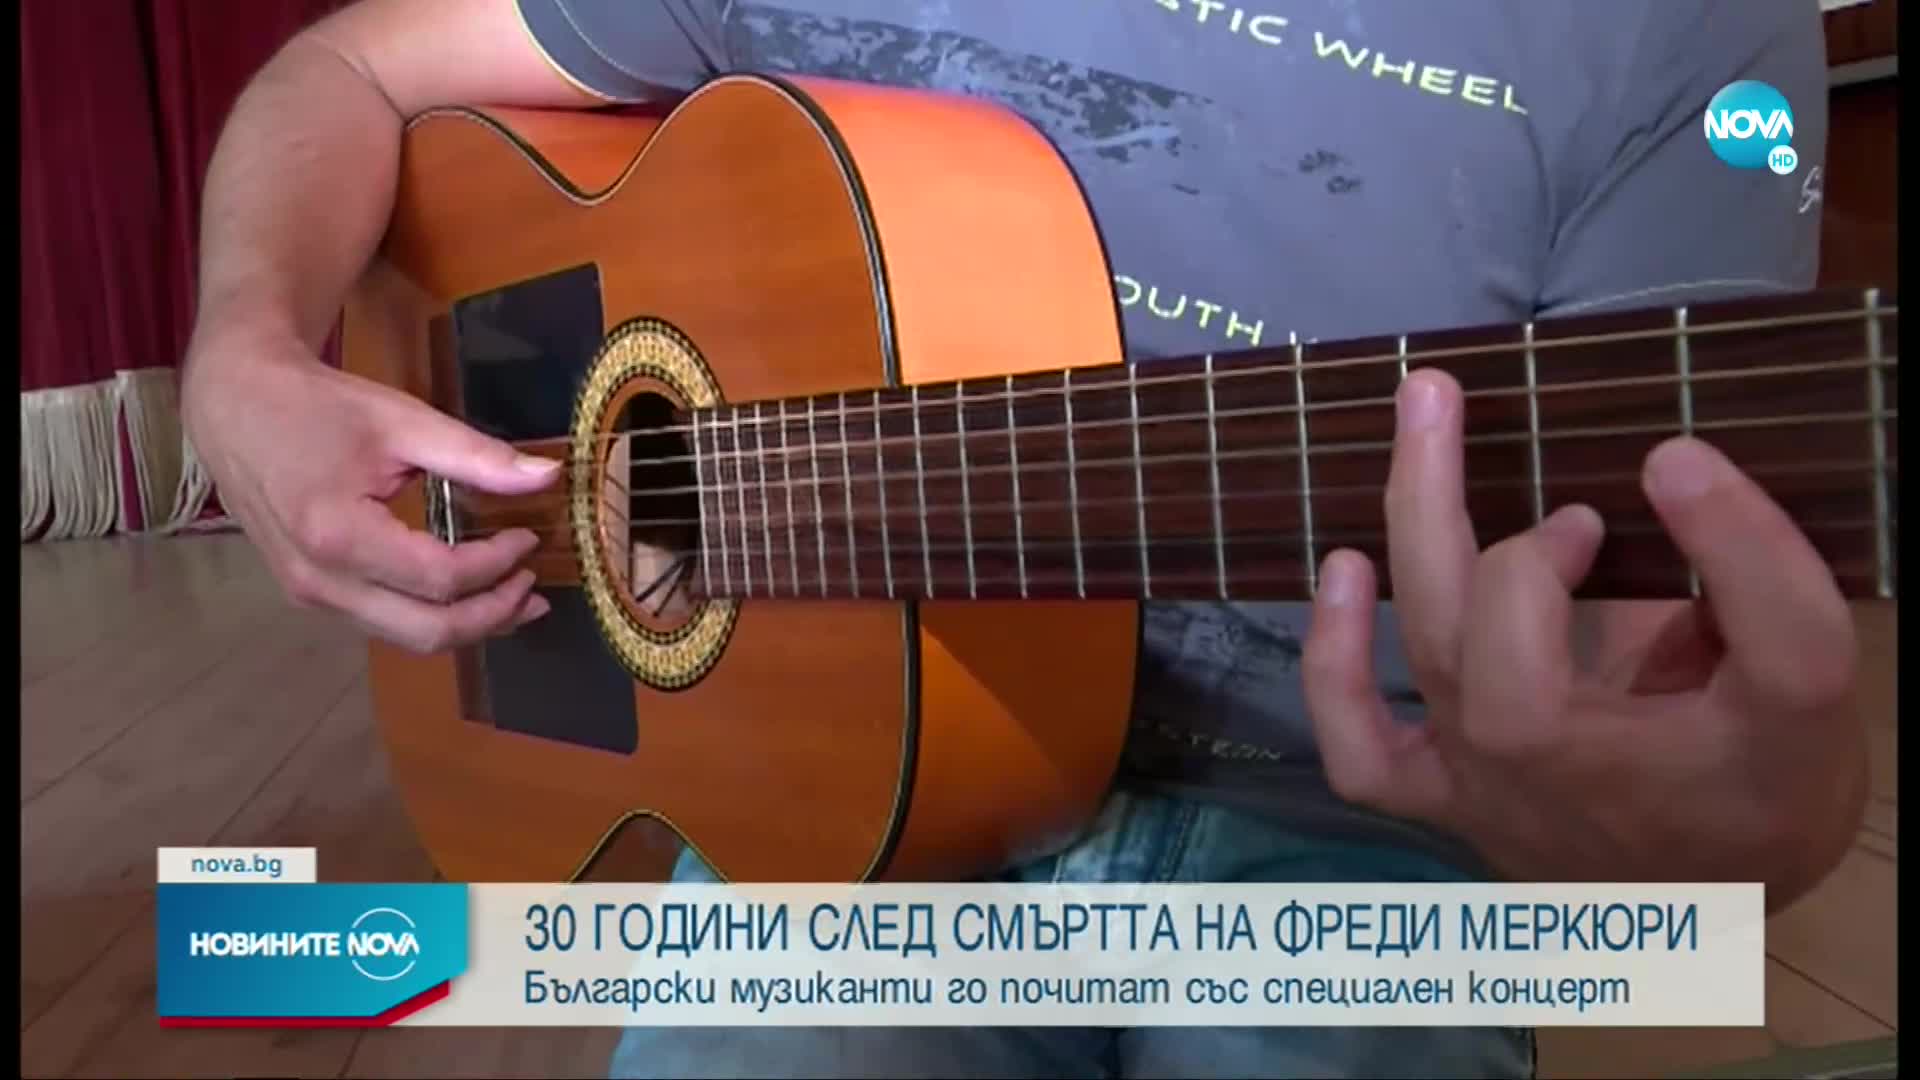 Български музиканти почитат Фреди Меркюри със специален концерт